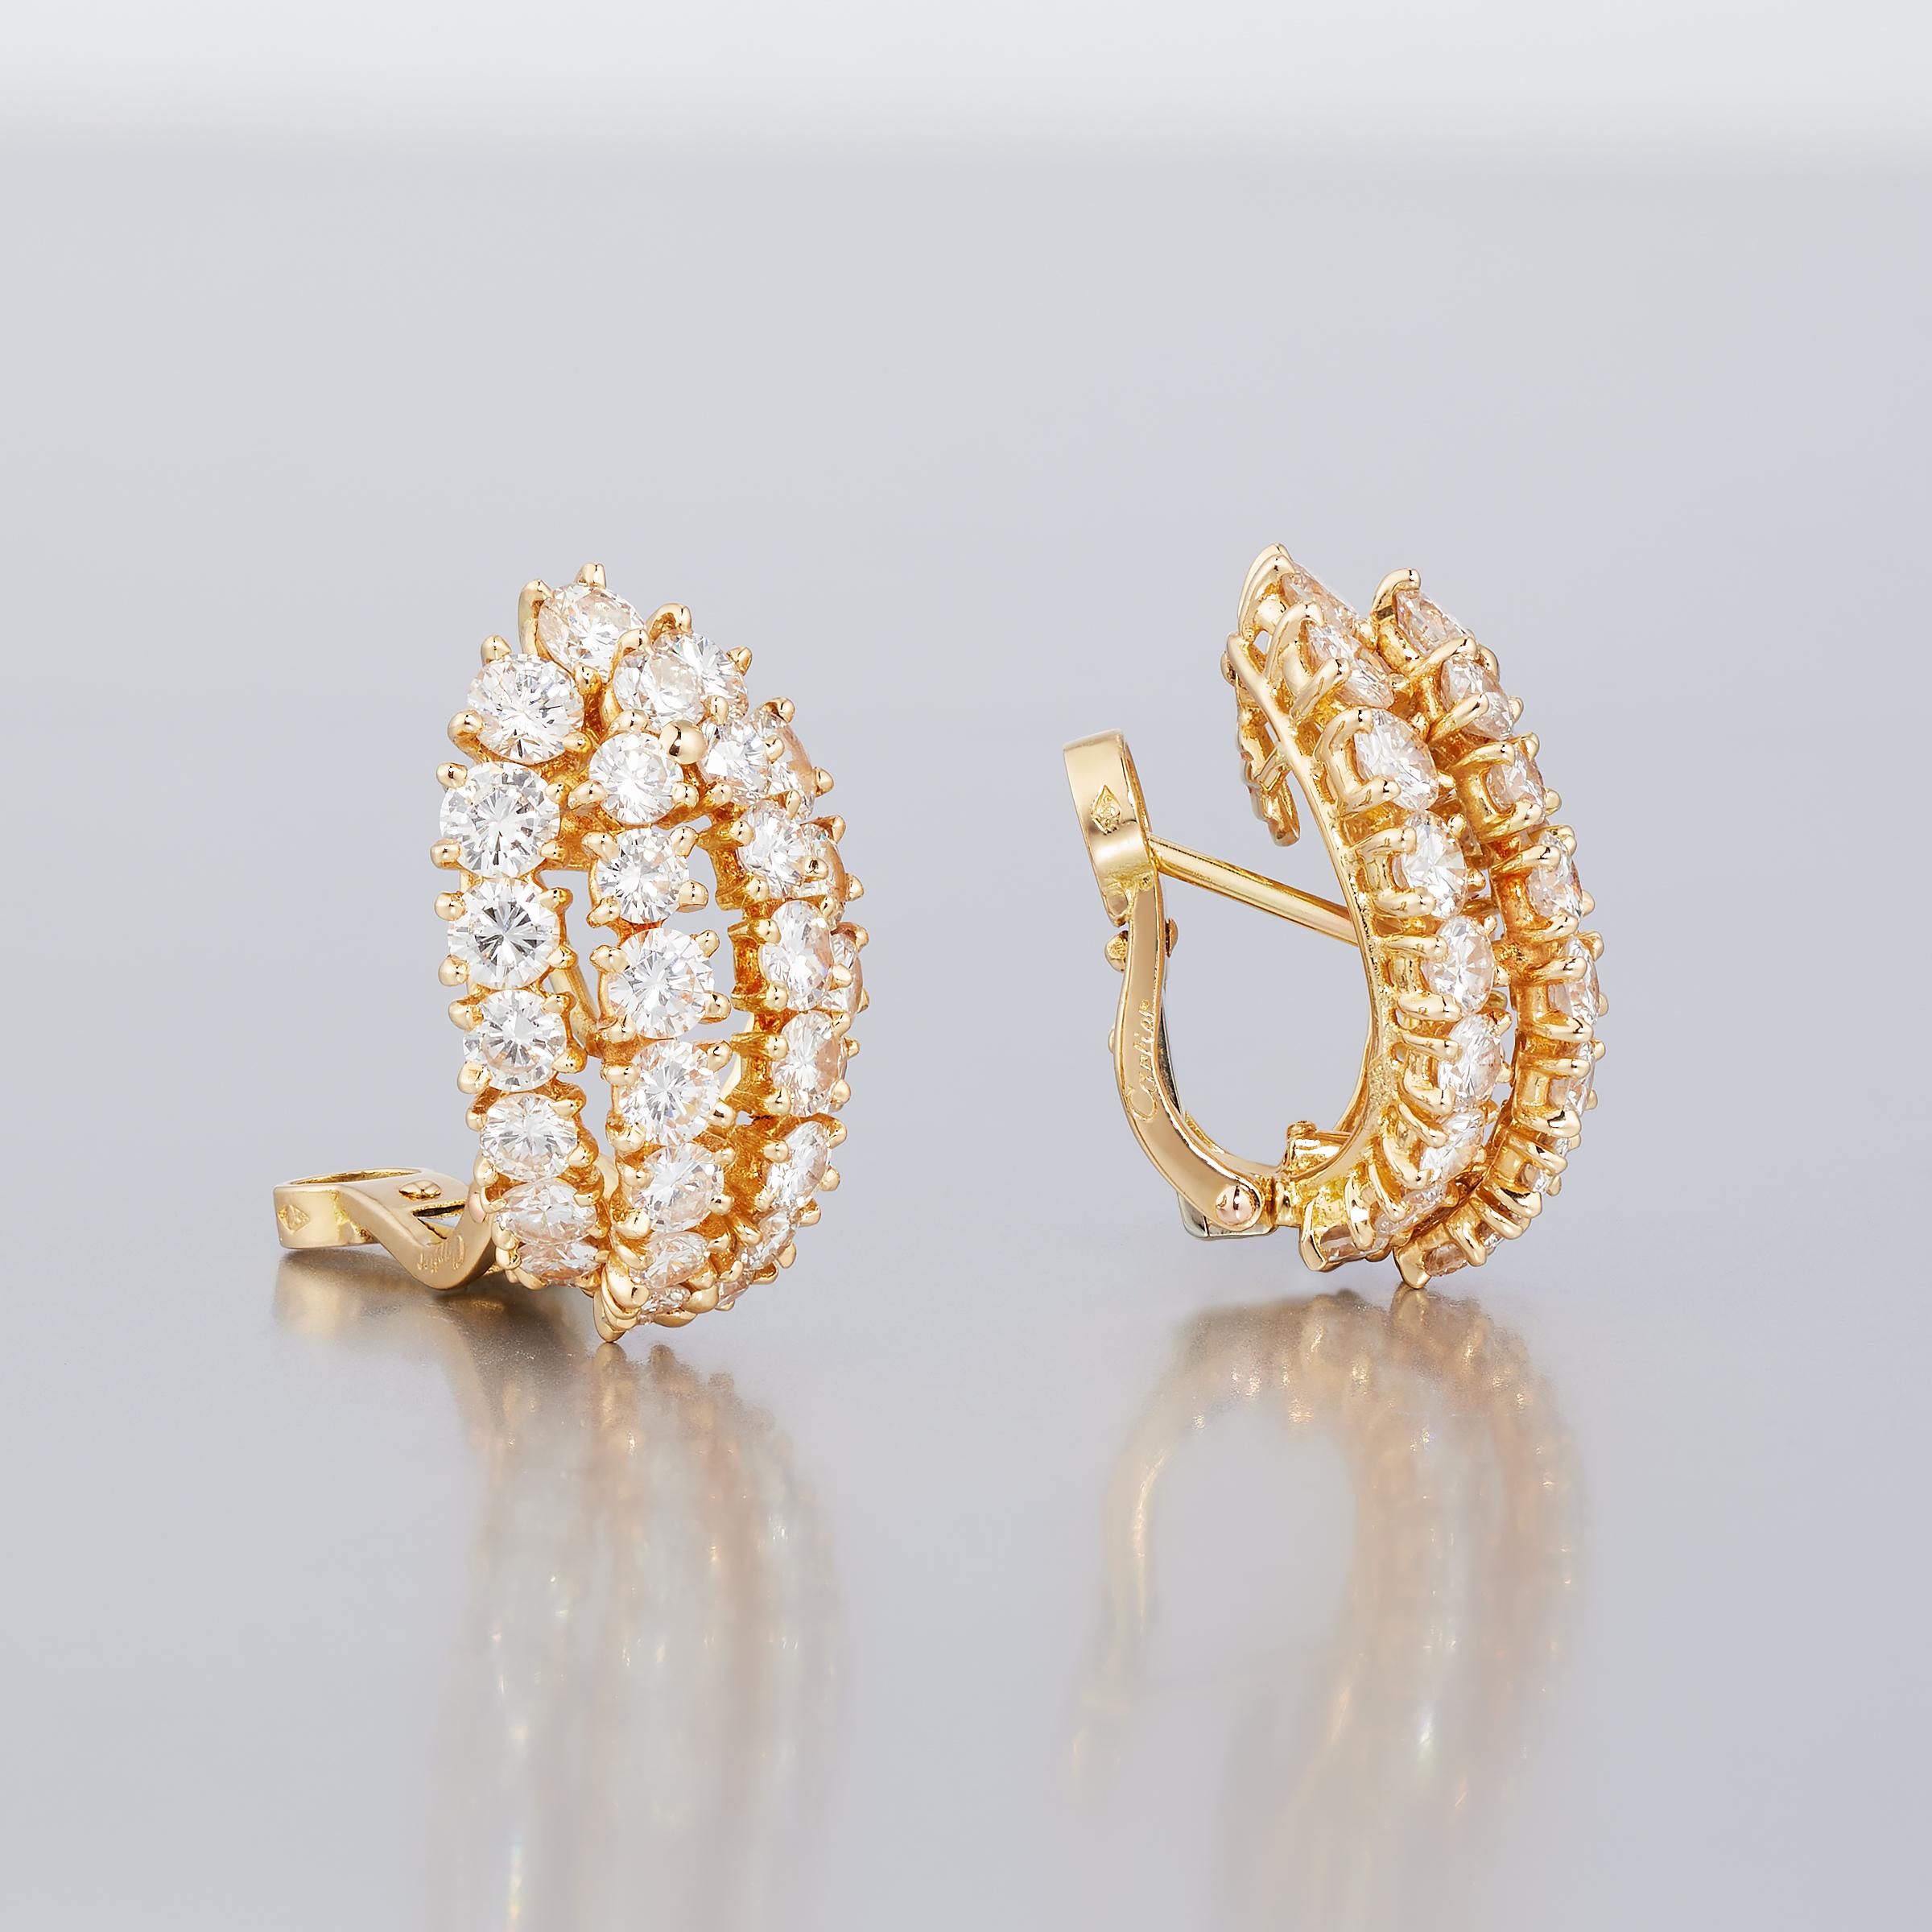 Une fabuleuse paire de boucles d'oreilles vintage en diamant de Cartier Paris. Elles présentent environ 5 carats de diamants étincelants sertis dans de l'or jaune 18 carats étincelant. Chaque boucle d'oreille est ornée de quatre rangées de diamants